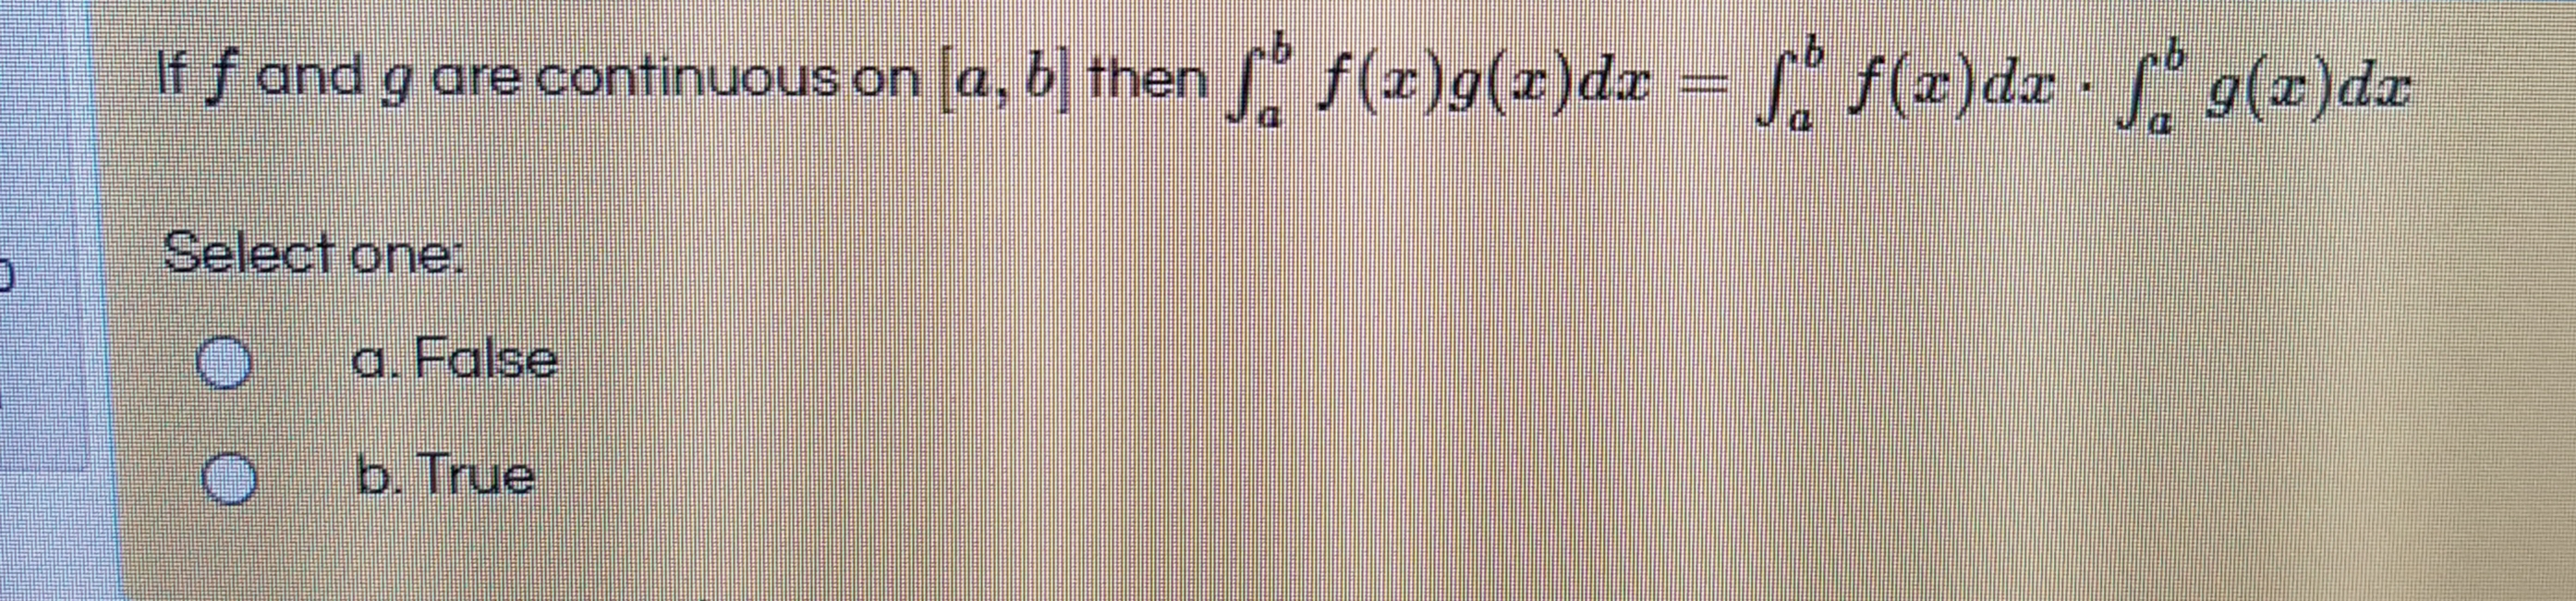 If f and g are continuous on [a, b] then f(x)g(x)dx = [" f(x)dx · L 9(x)dx
xp(x)6
Select one:
a. False
b. True
